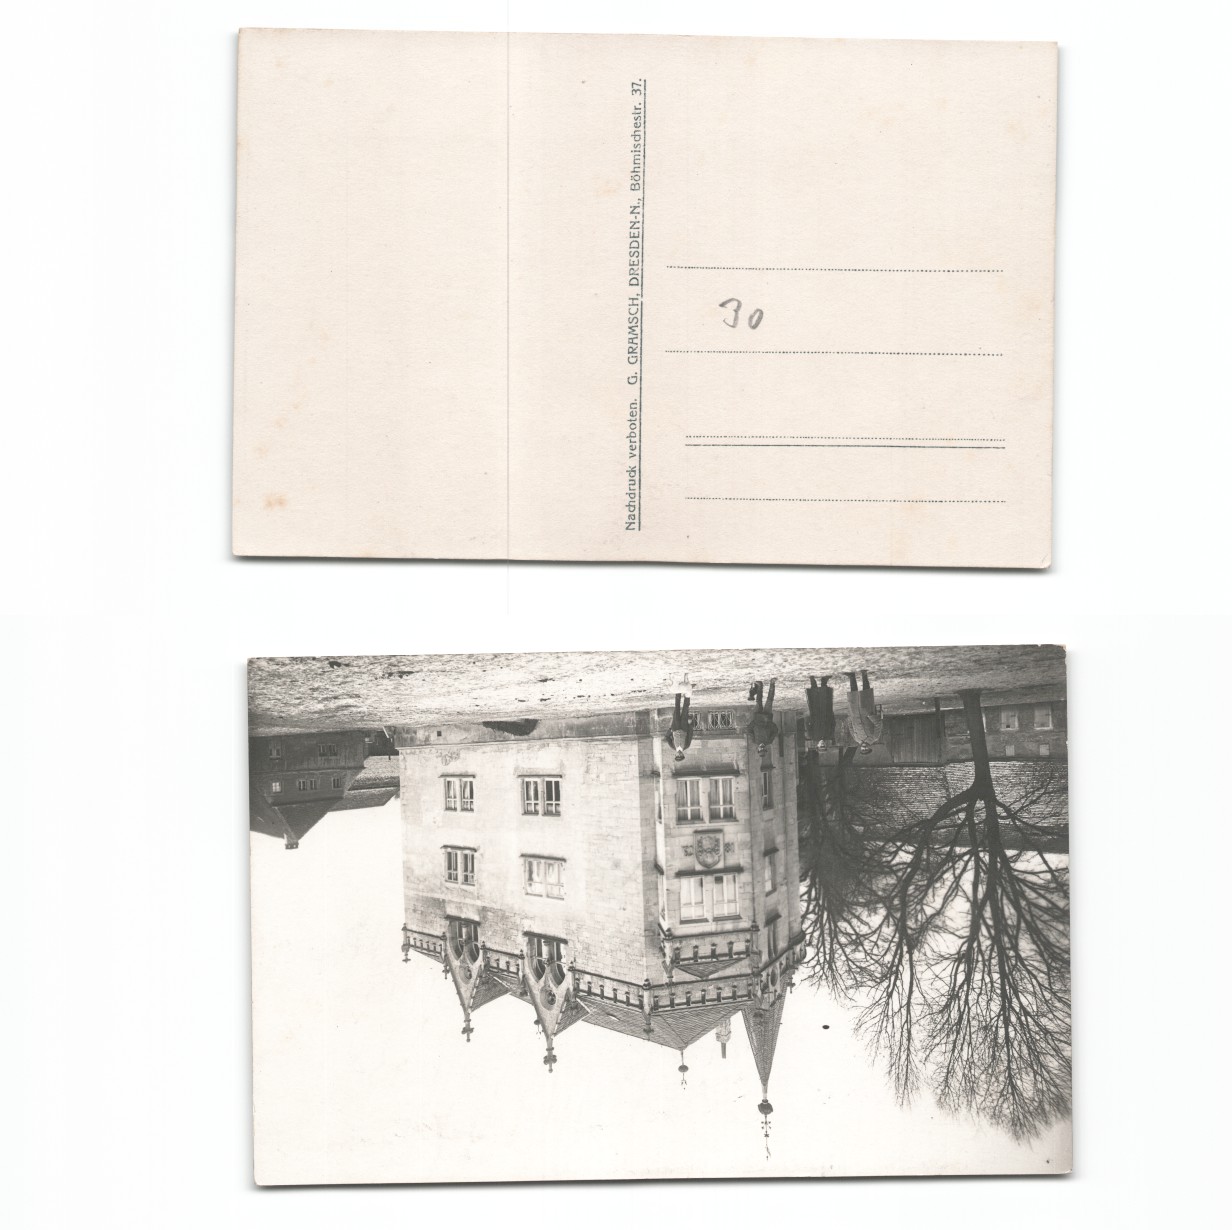 (a6265130)   Fotoansichtskarte Osten Bug Düna etc, 1. Weltkrieg, - Bild 1 von 1